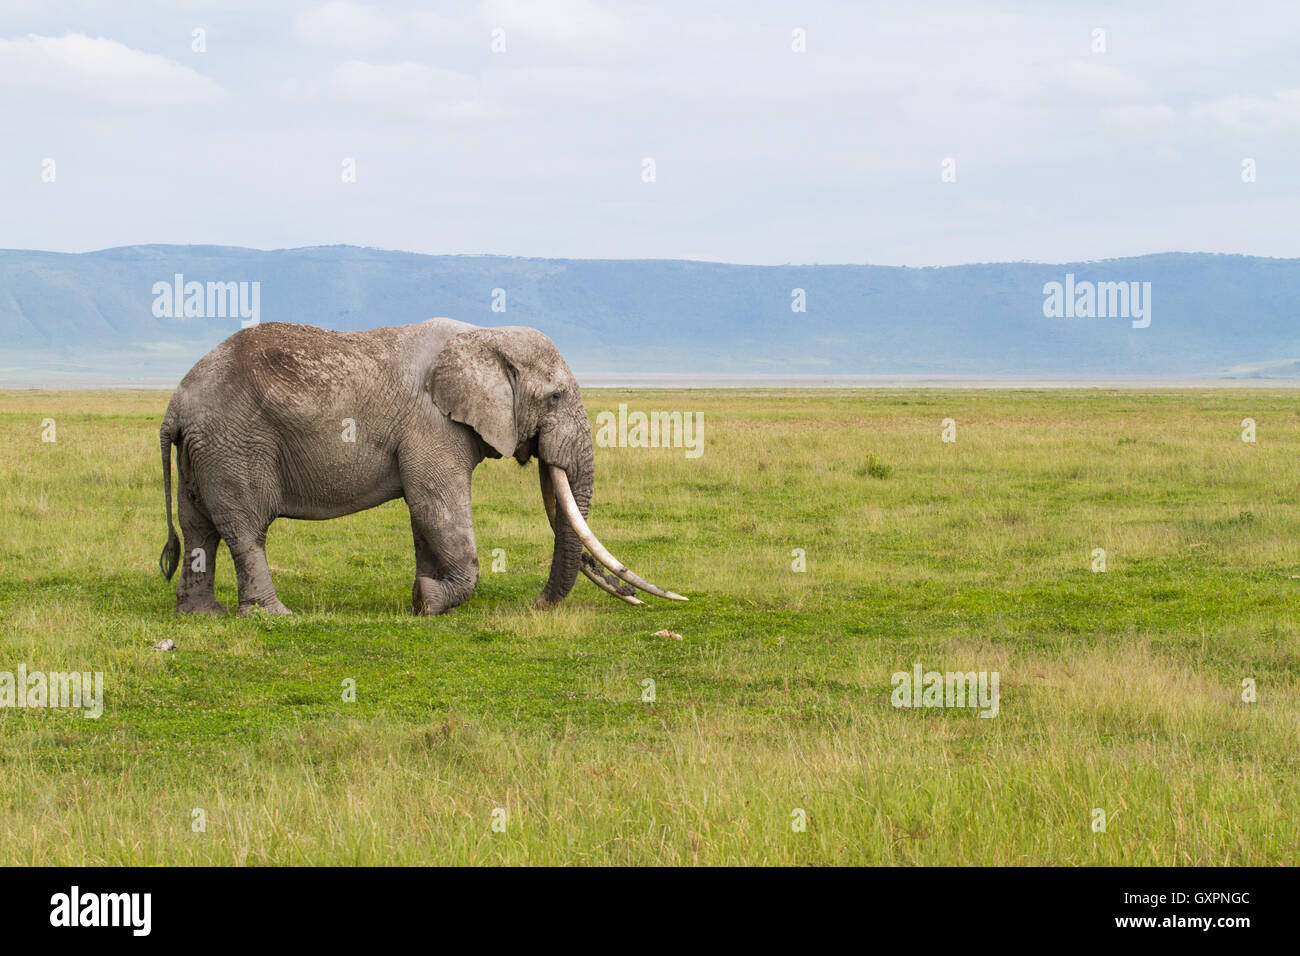 Old Bull del elefante africano (Loxodonta africana) con grandes colmillos Foto de stock